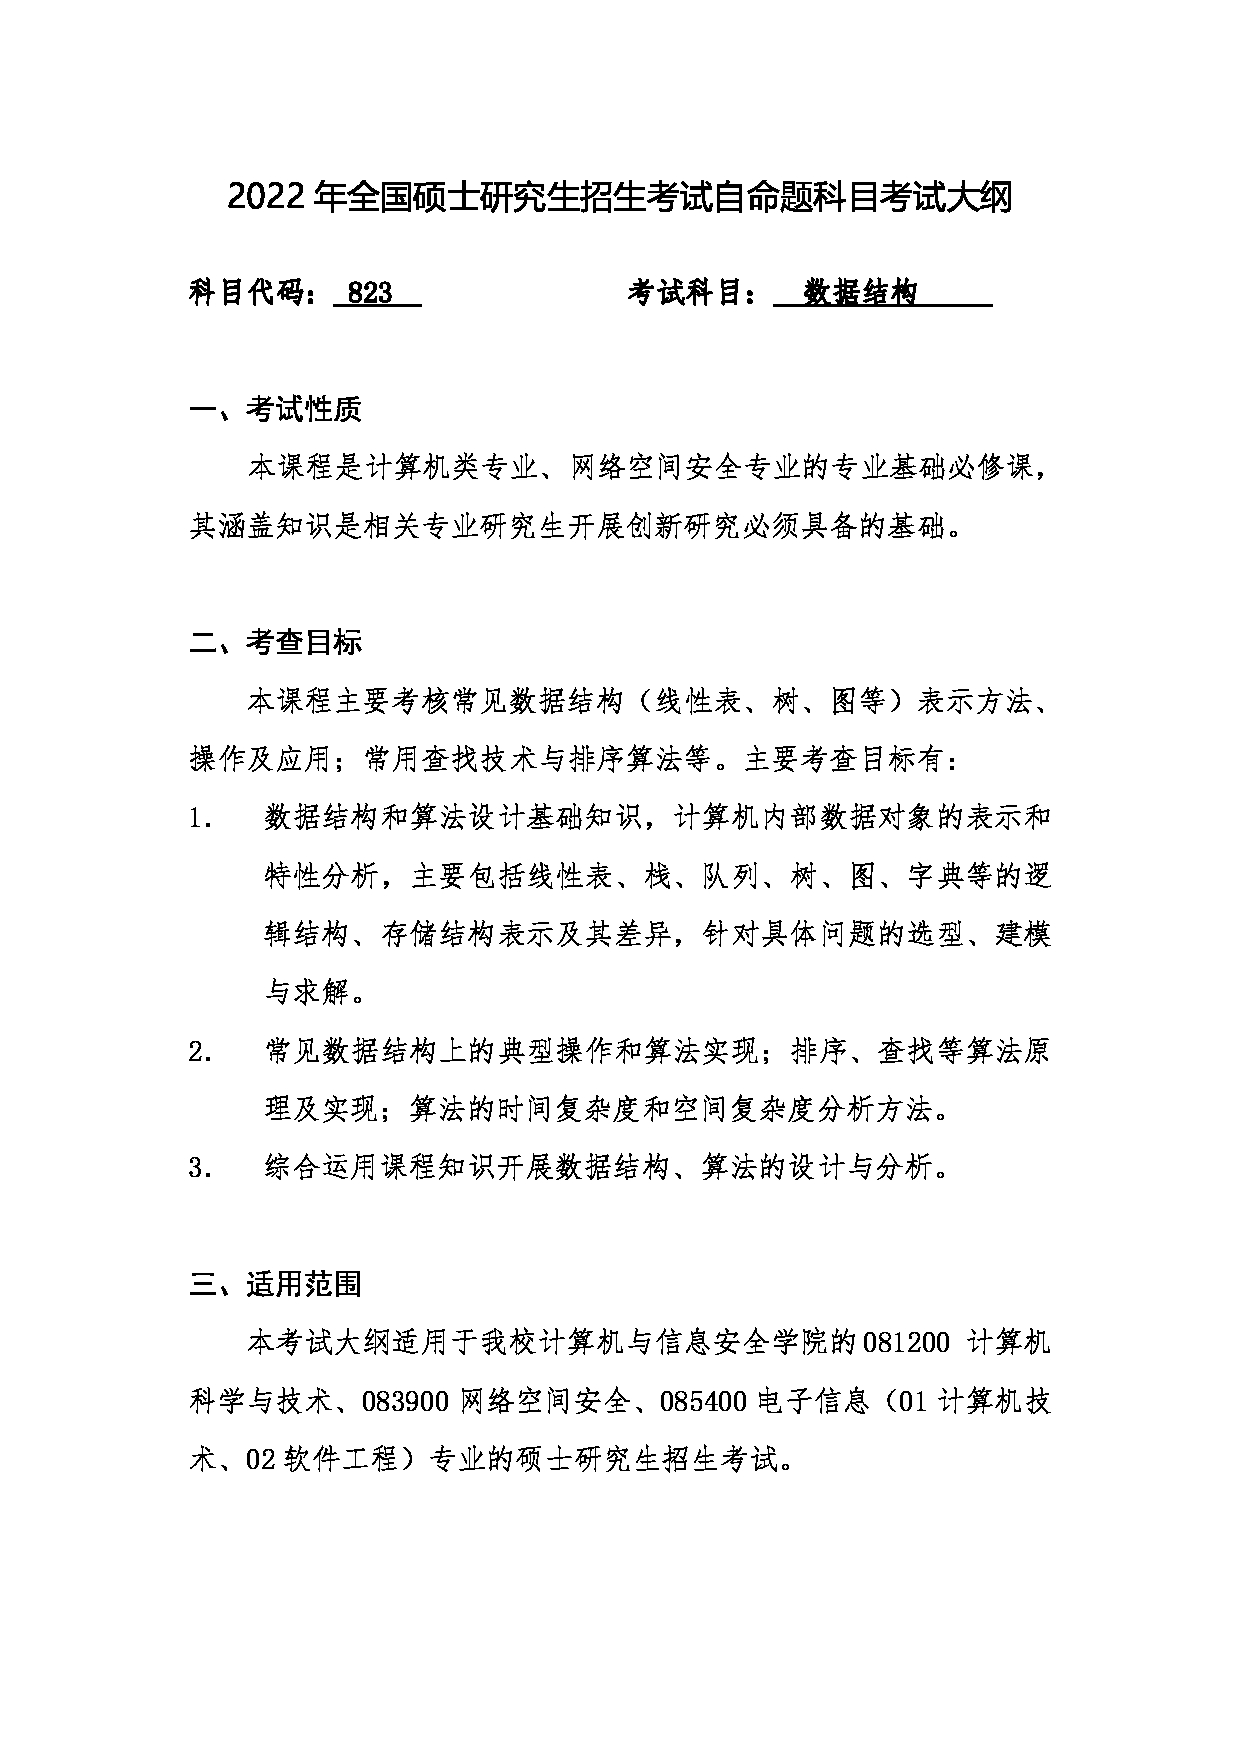 2022考研大纲：桂林电子科技大学2022年考研 823 数据结构 考试大纲第1页